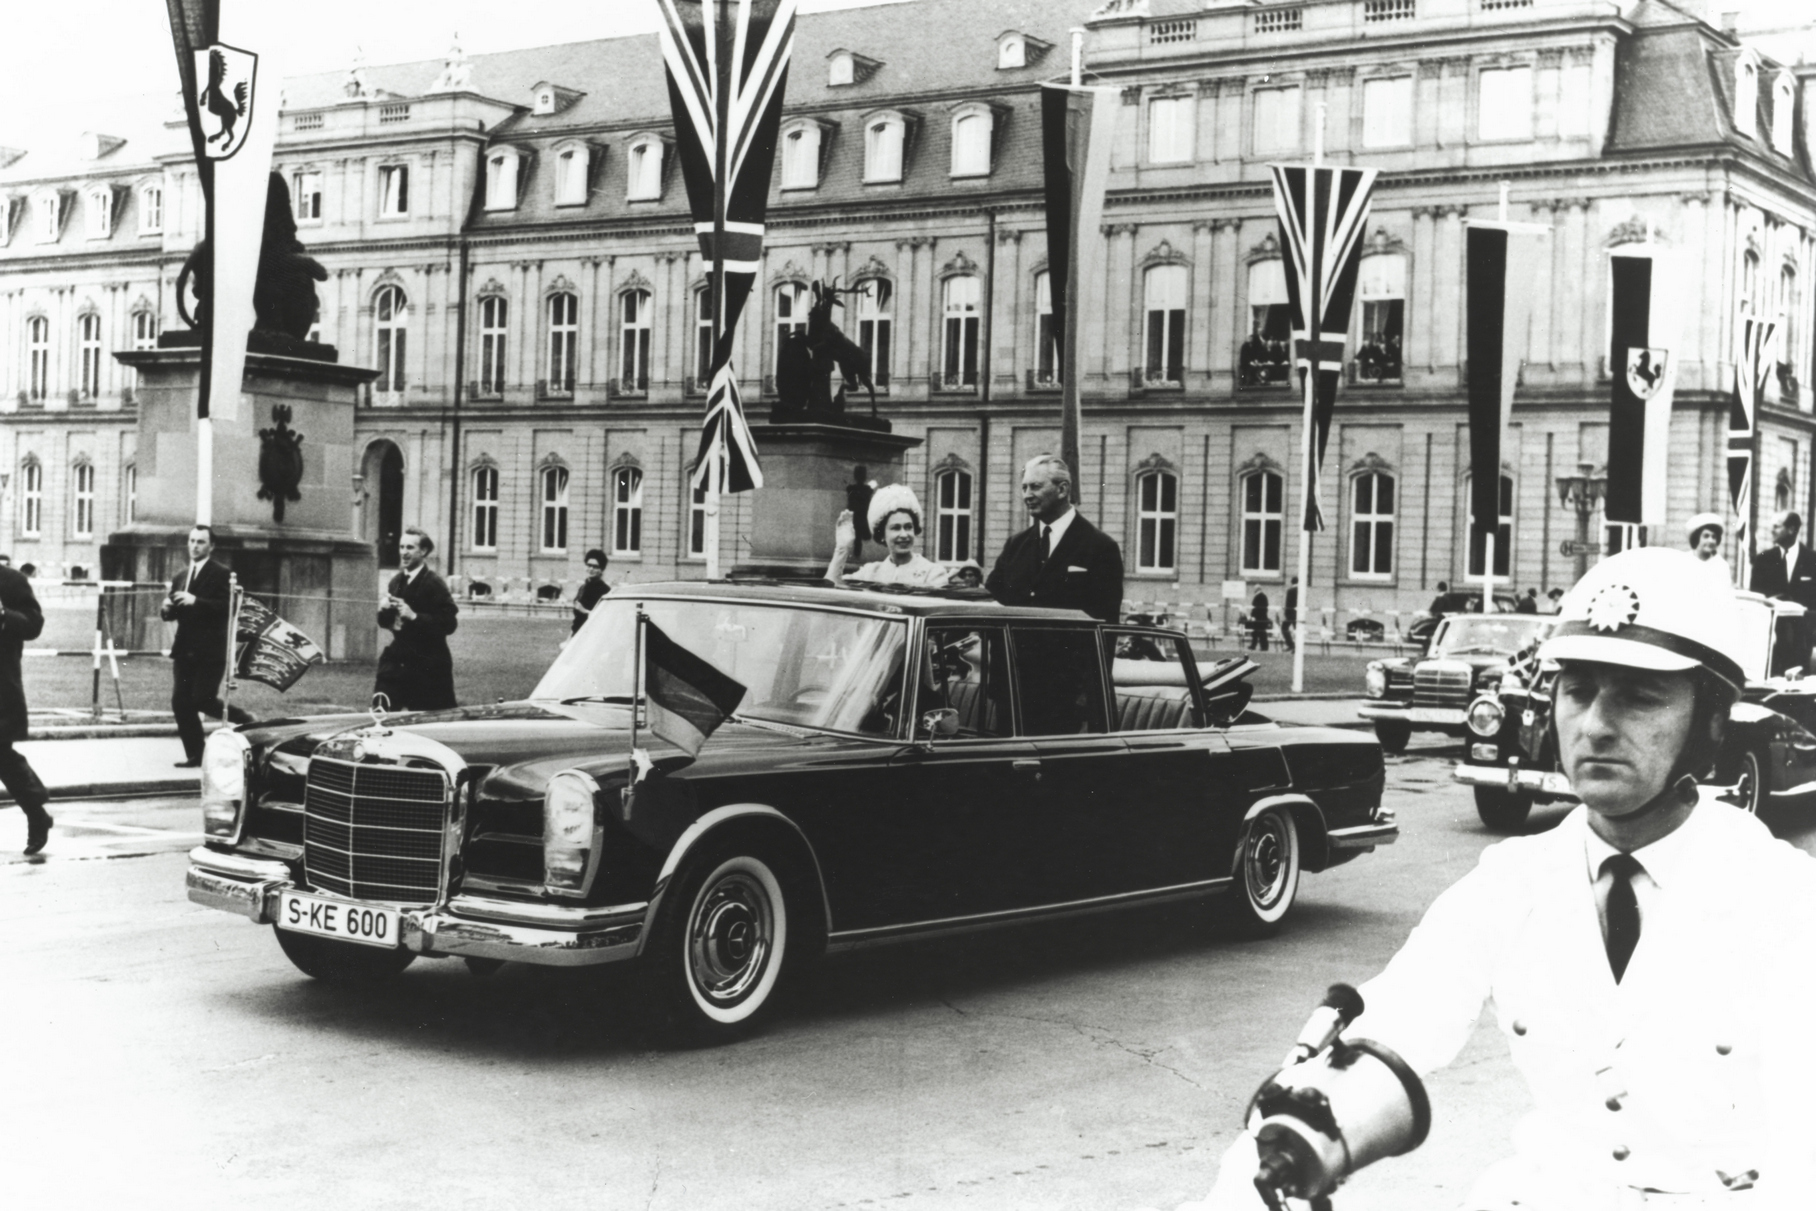 А вот эта фотография лучше демонстрирует статус модели: он сделан во время визита английской королевы Елизаветы II в Германию